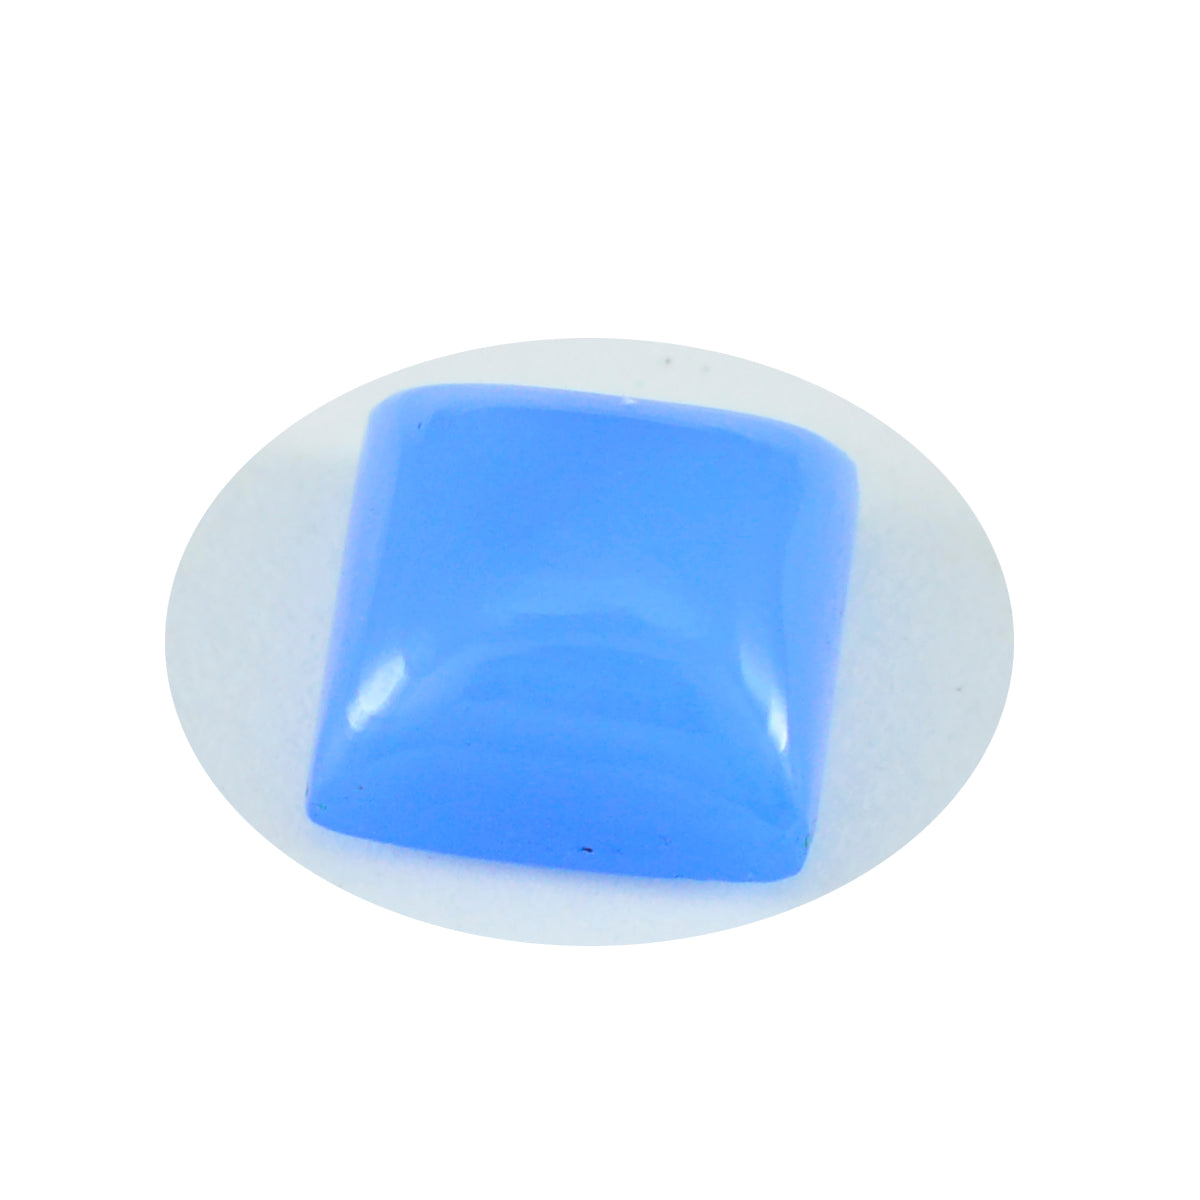 Riyogems 1 Stück blauer Chalcedon-Cabochon, 15 x 15 mm, quadratische Form, wunderbare Qualitätsedelsteine